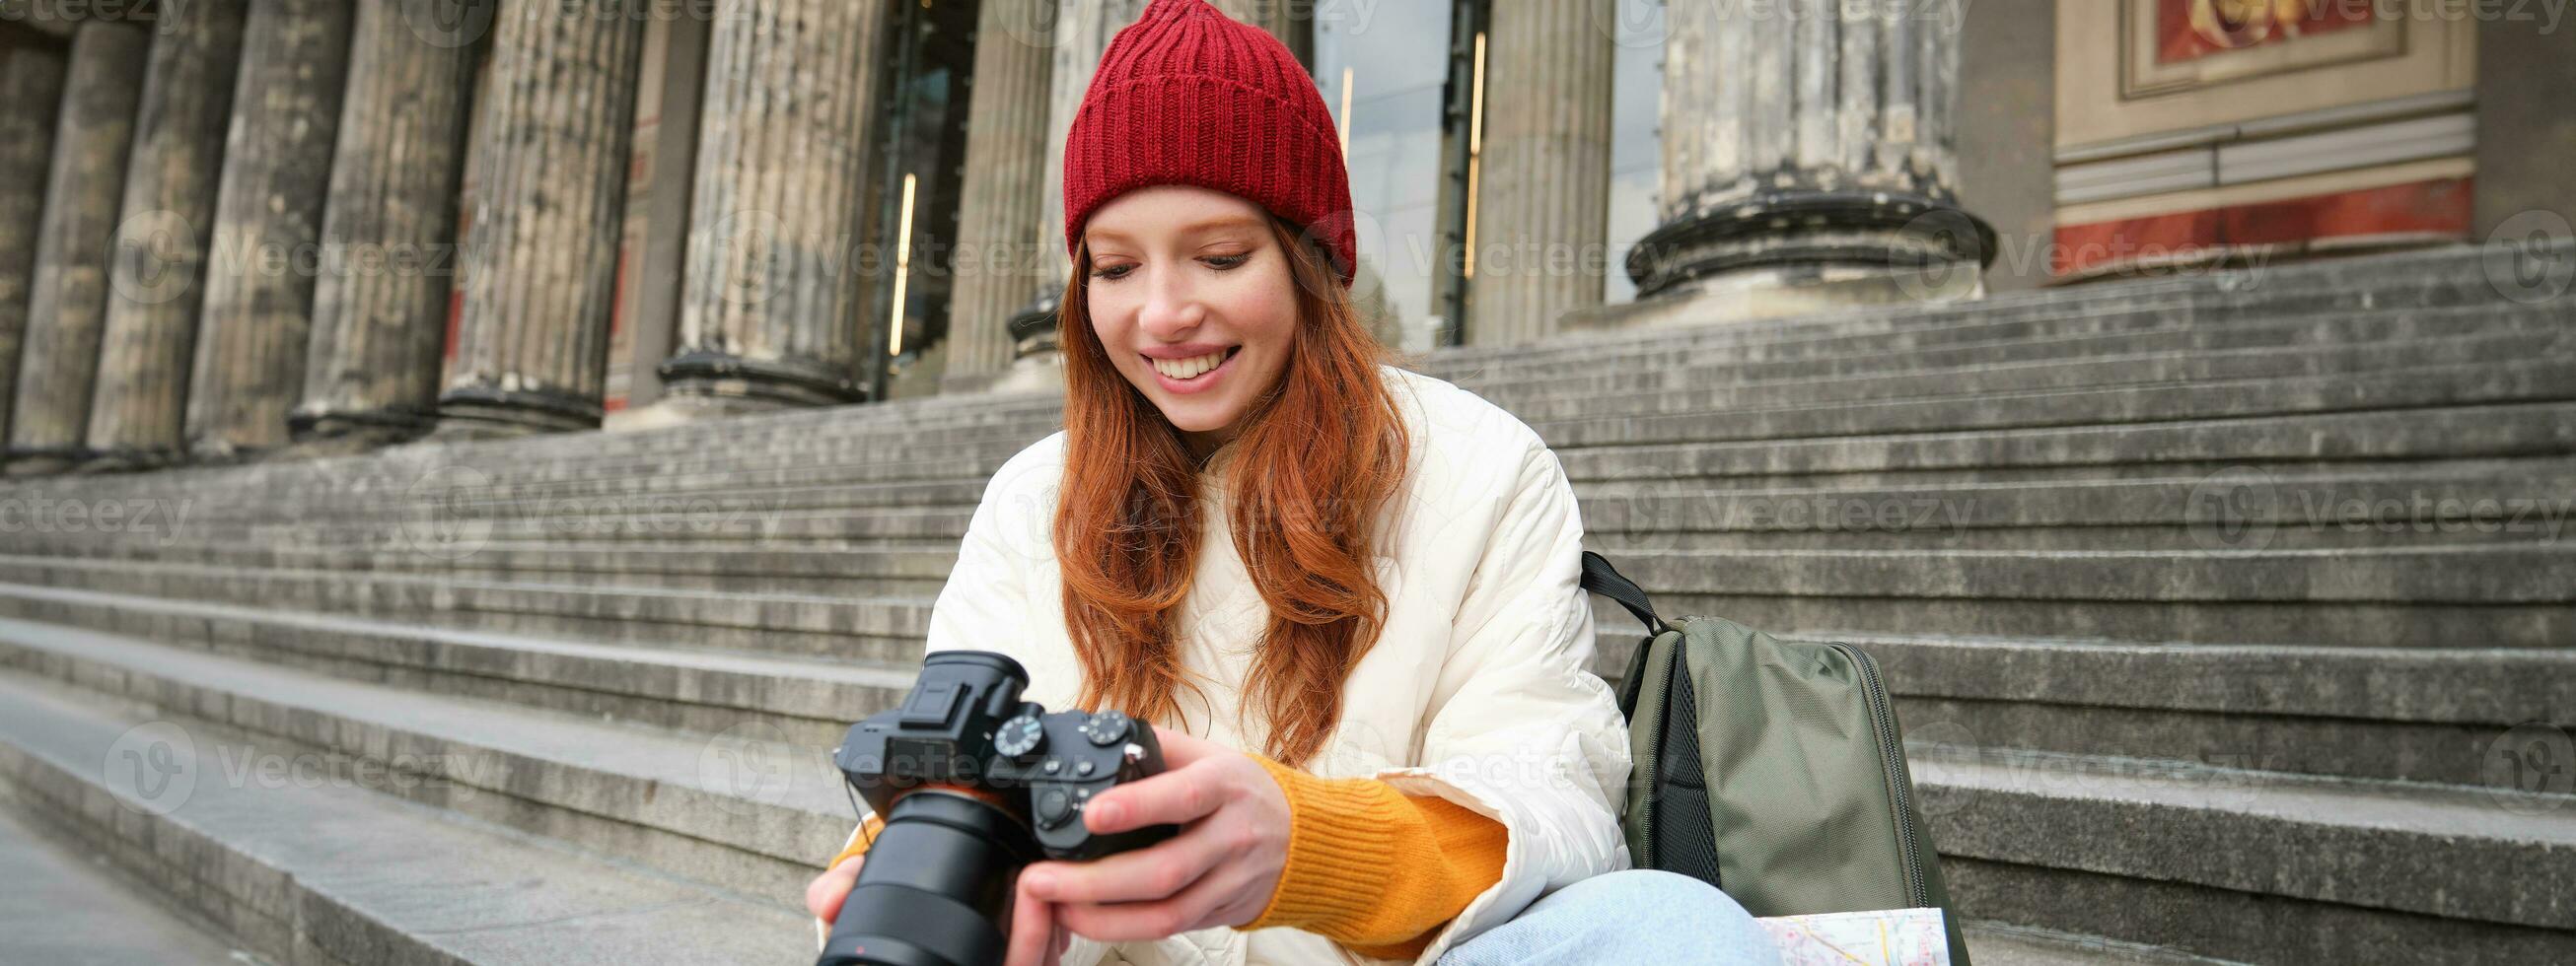 Jeune étudiant, photographe est assis sur rue escaliers et chèques sa coups sur professionnel caméra, prise Photos en plein air